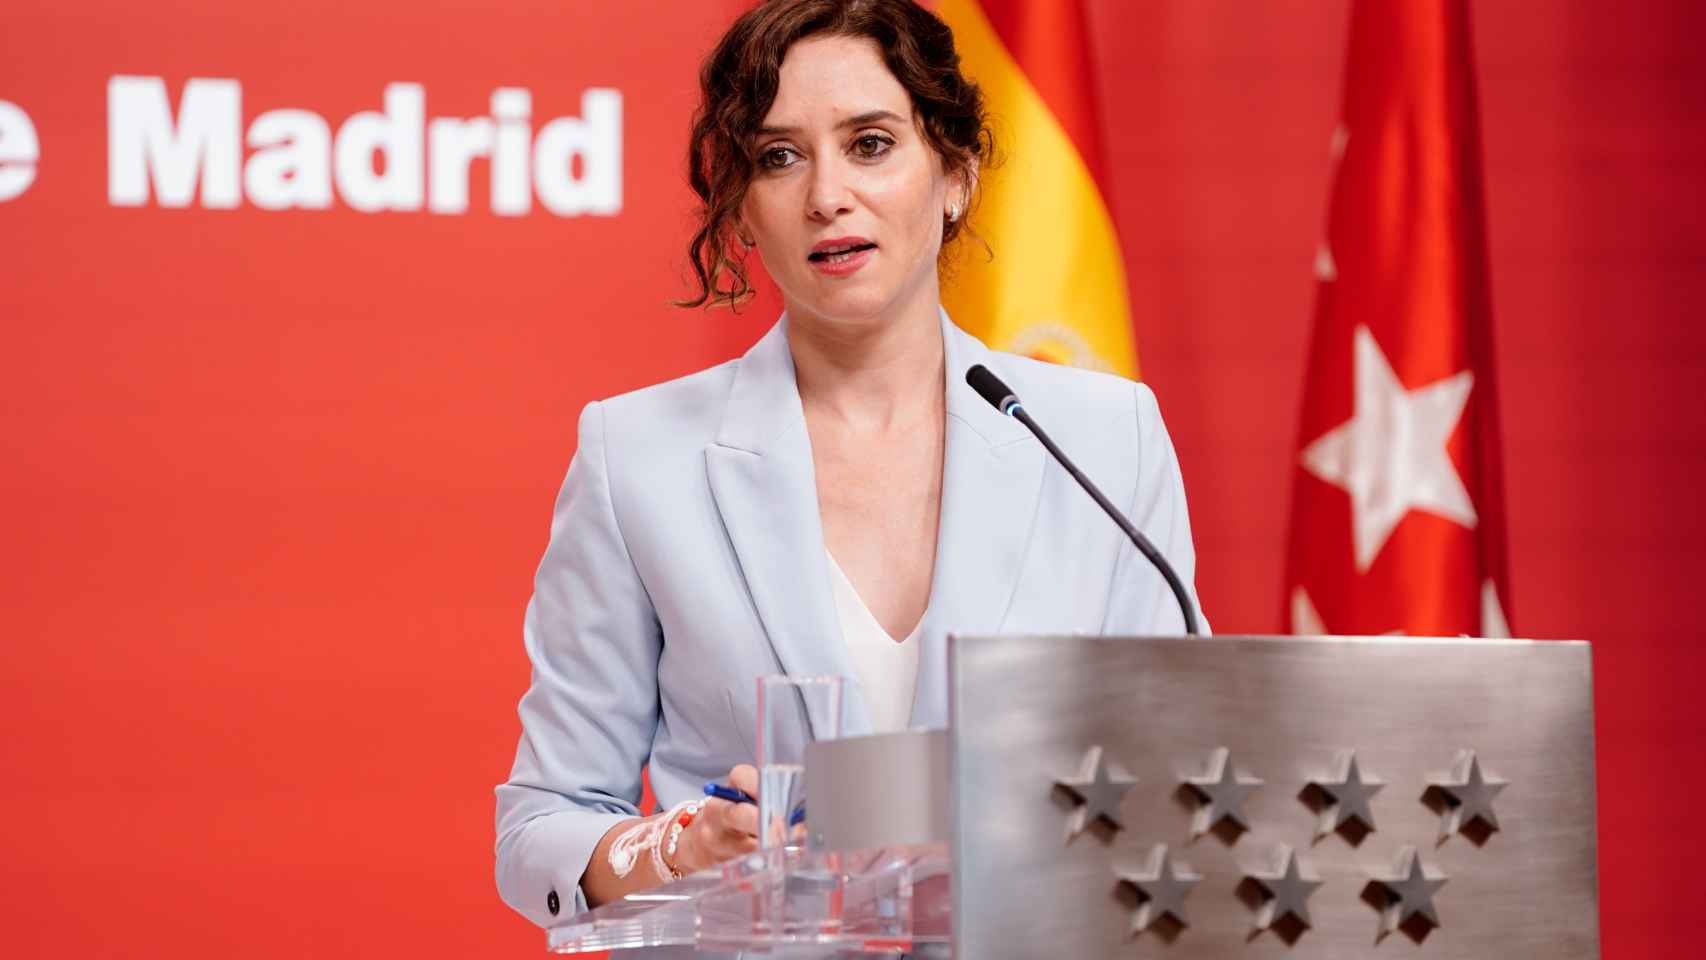 La presidenta de la Comunidad de Madrid, Isabel Díaz Ayuso, informa de que la Comunidad de Madrid contará este curso escolar con 1.266 nuevos profesores en centros públicos.